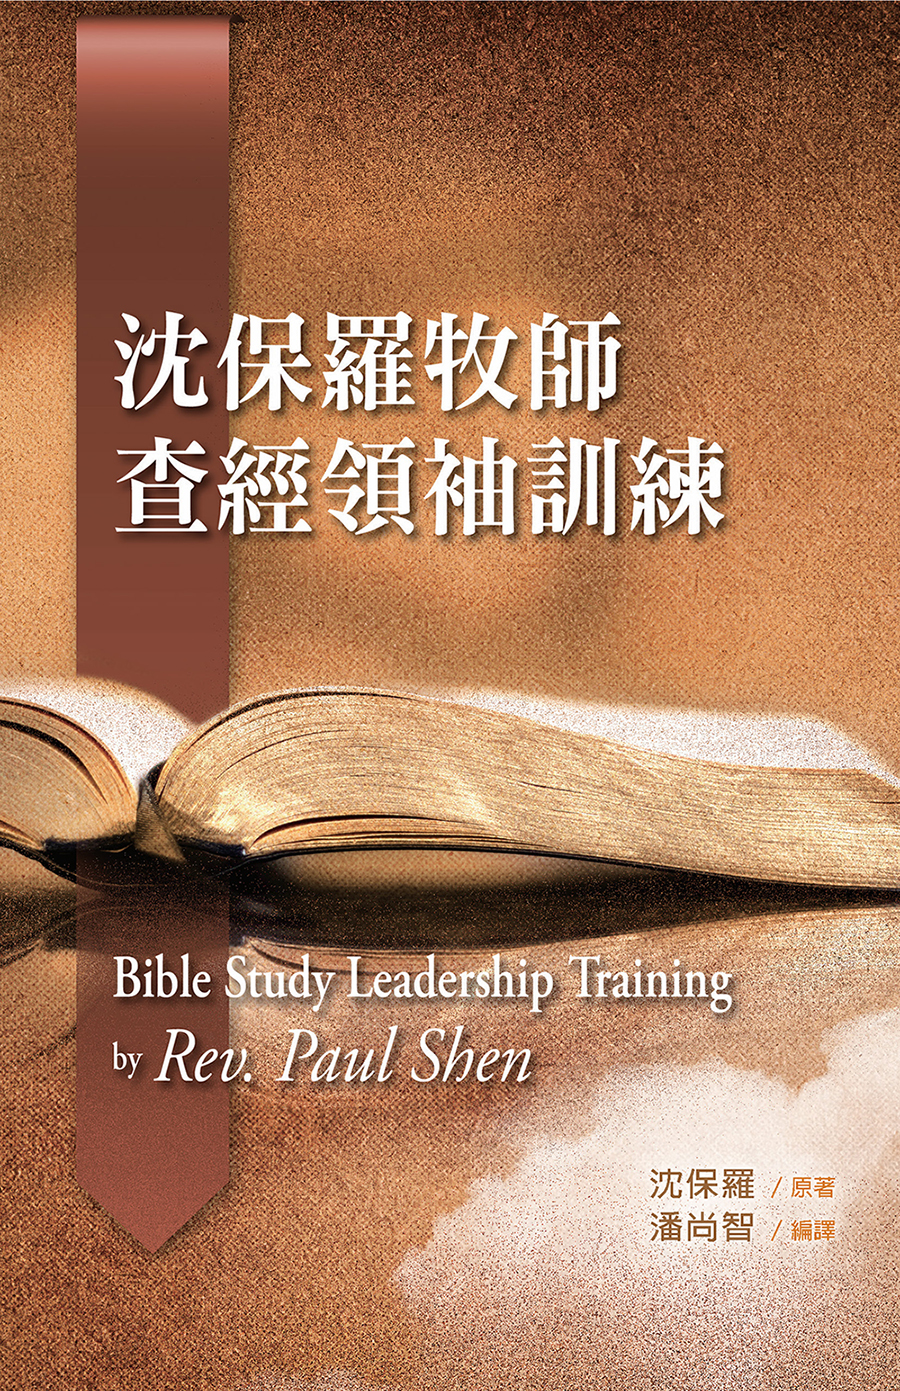 E1-04 HOùvdgSVm Bible Study Leadership Training by Rev. Paul Shen S (ܥ|멳I)